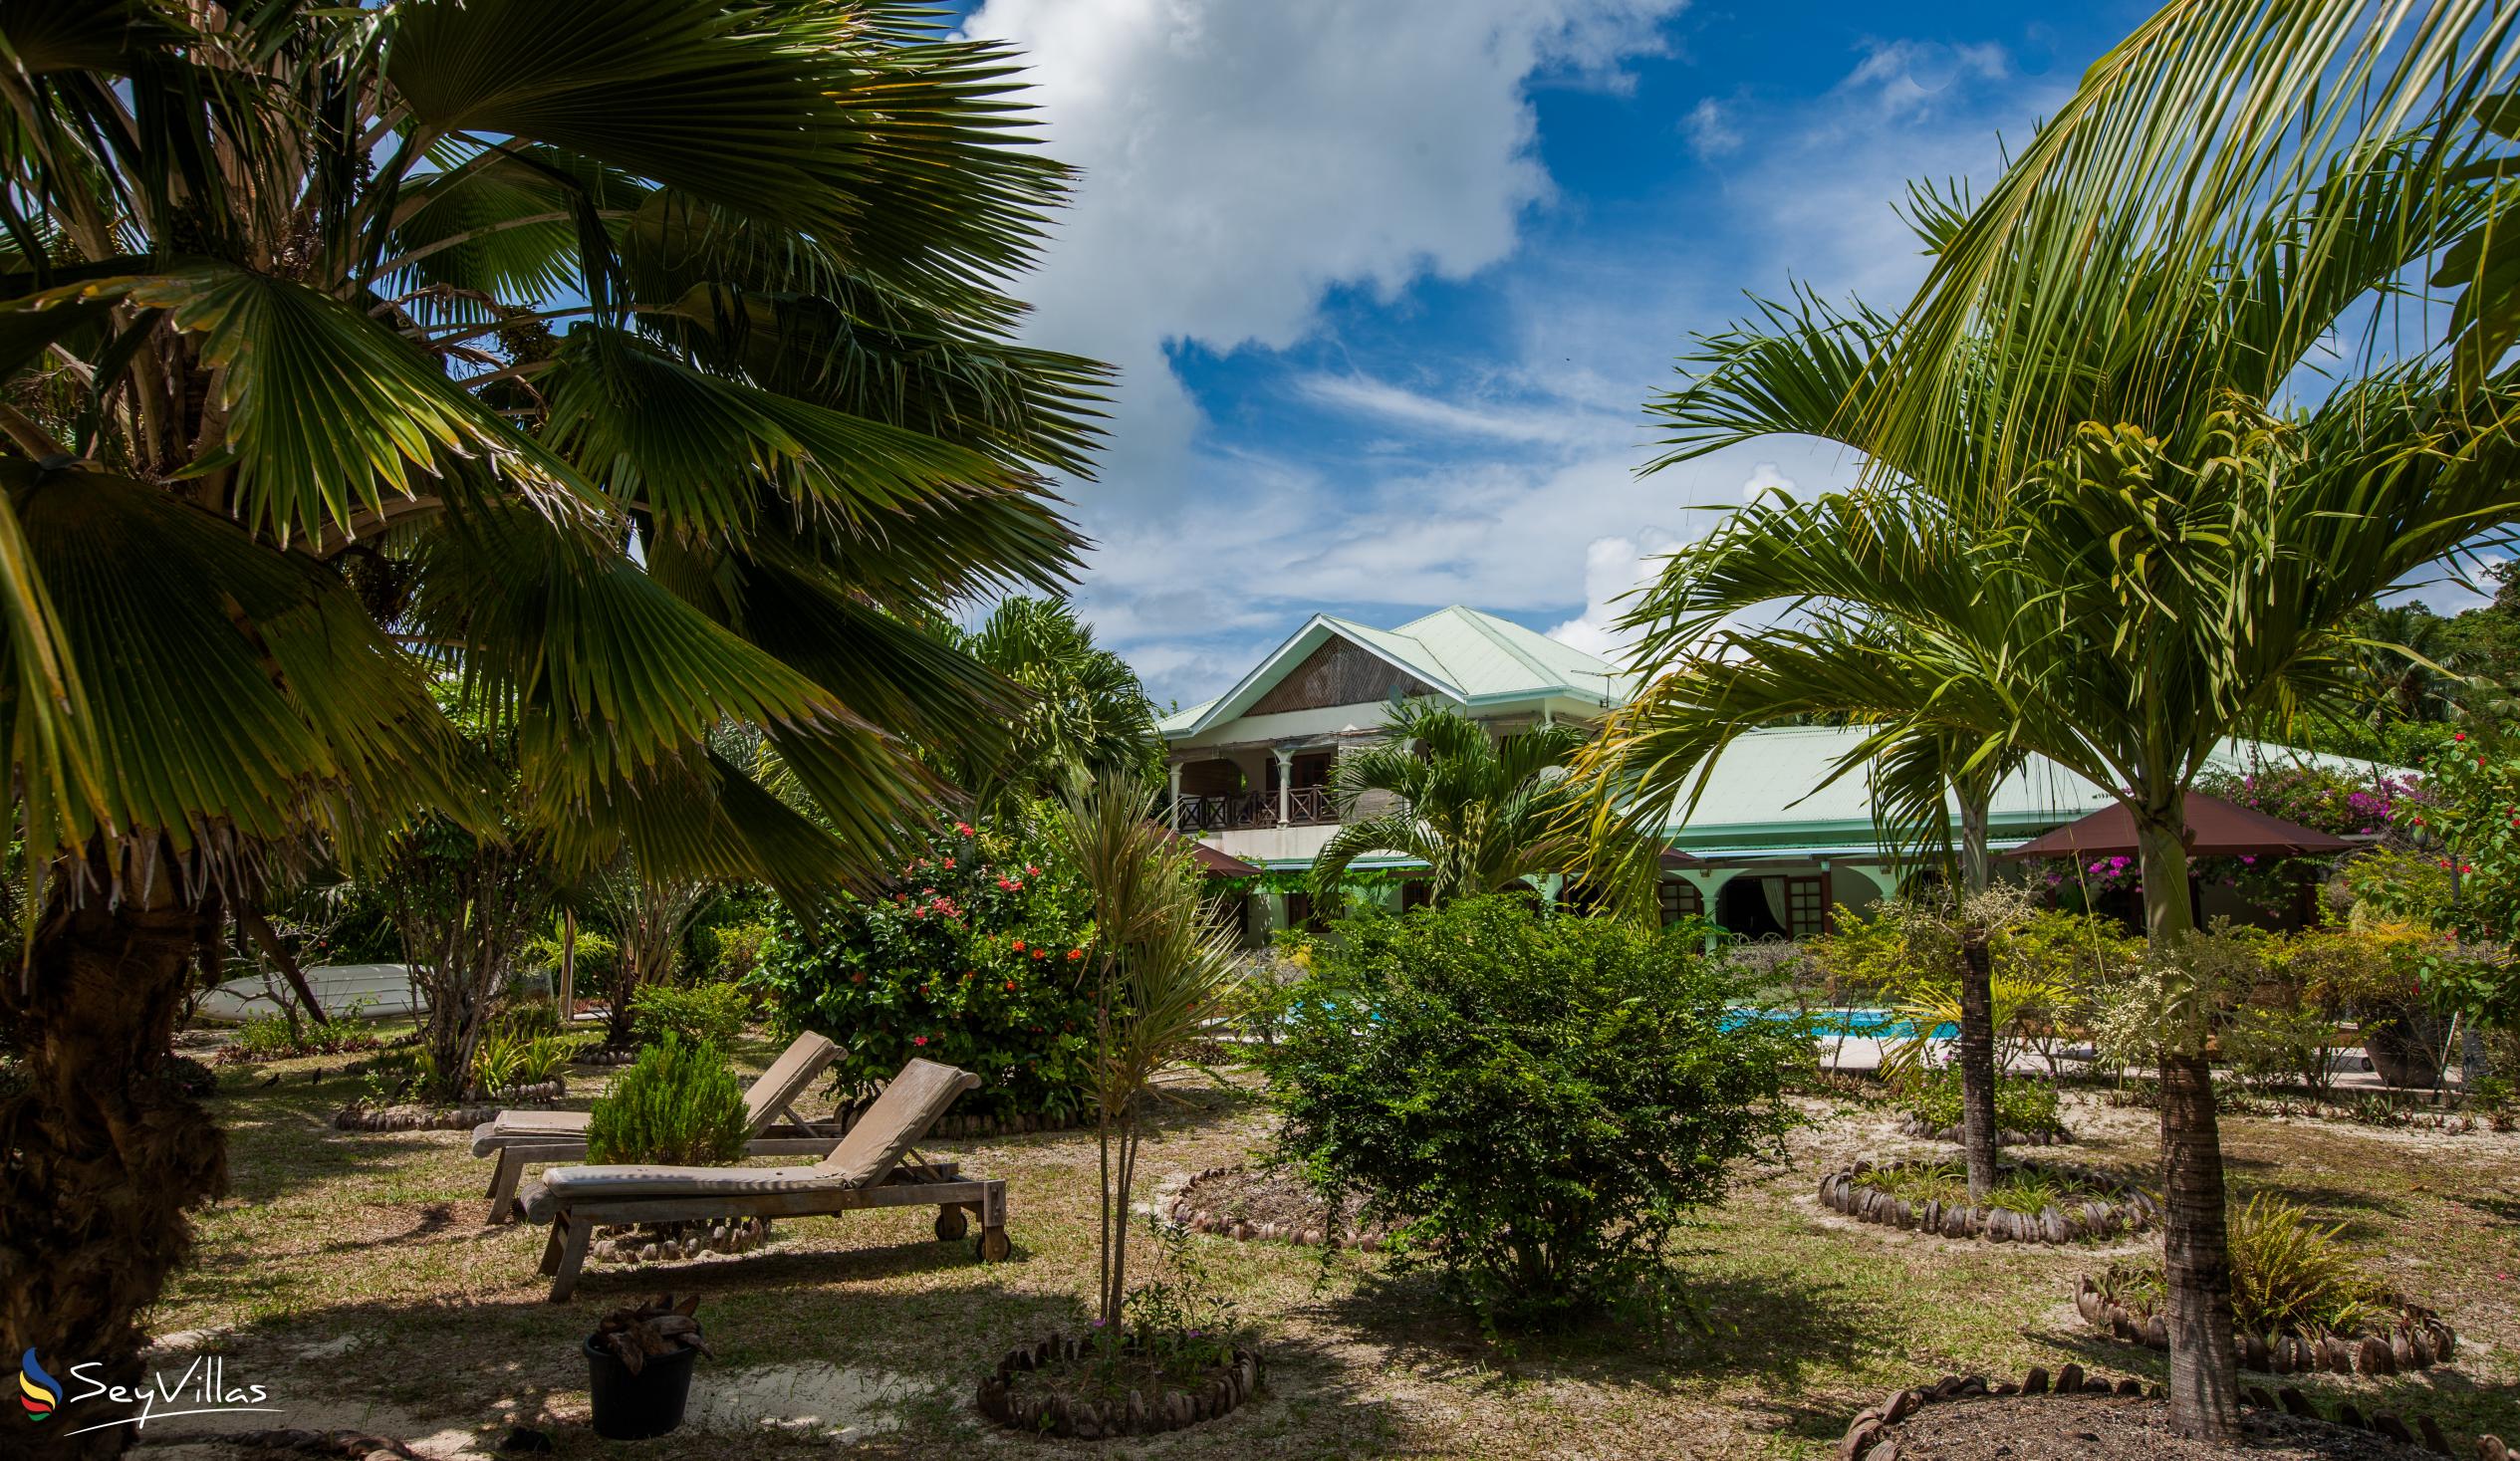 Foto 11: Villa de Cerf - Extérieur - Cerf Island (Seychelles)